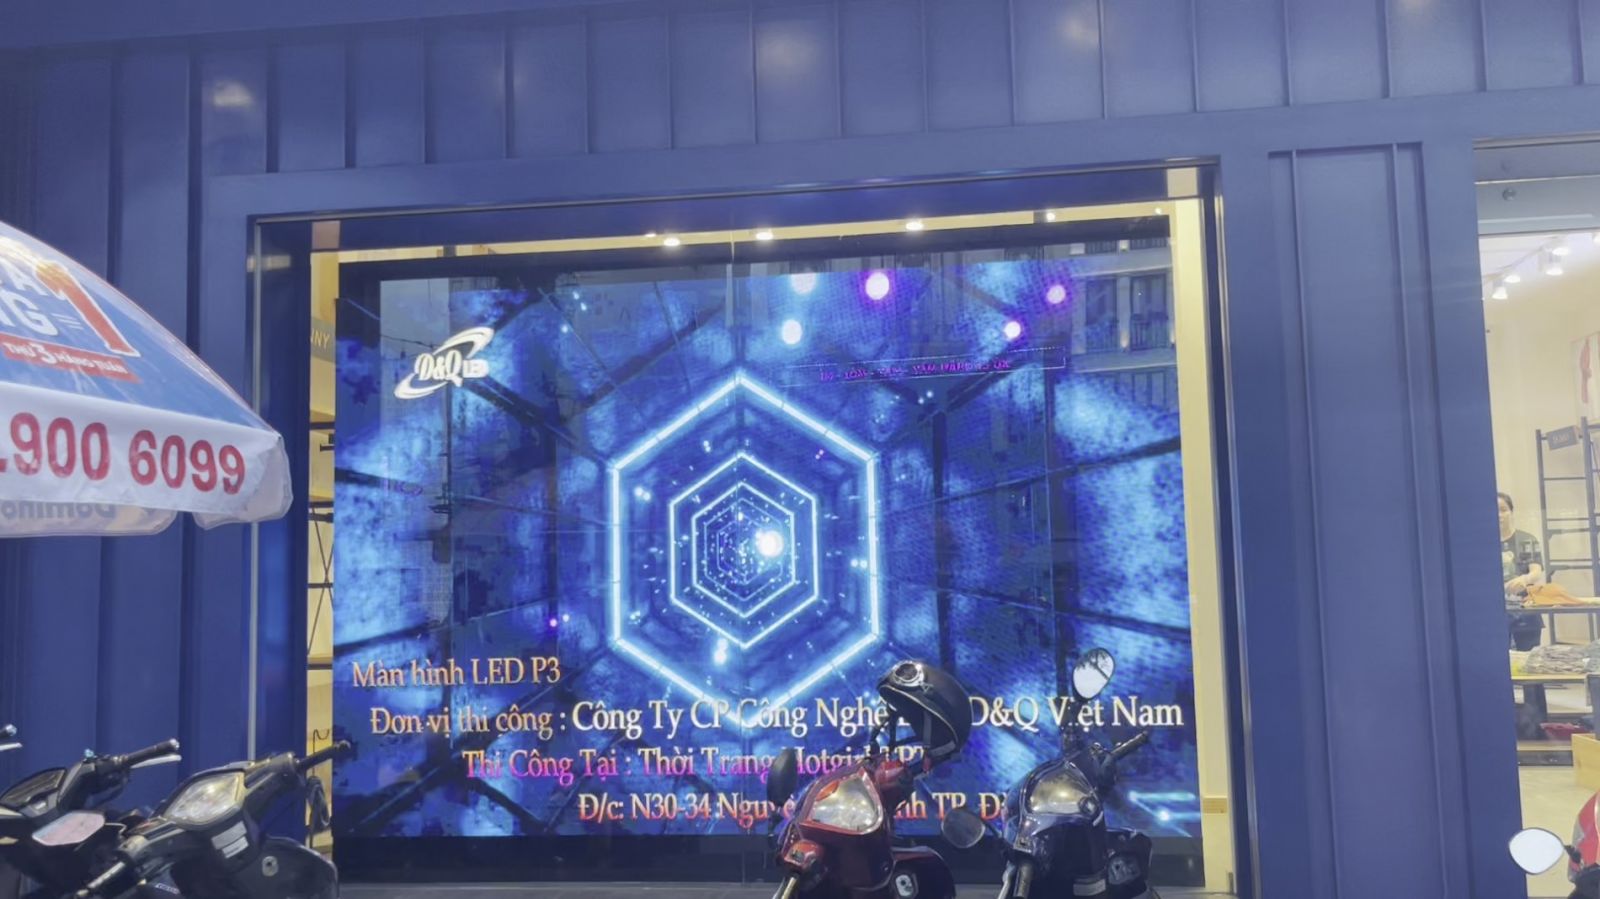 Thời Trang LEVIS Nguyễn Văn Linh Đà Nẵng | Màn hình LED P3 Trong Shop Thời Trang | LED DQ